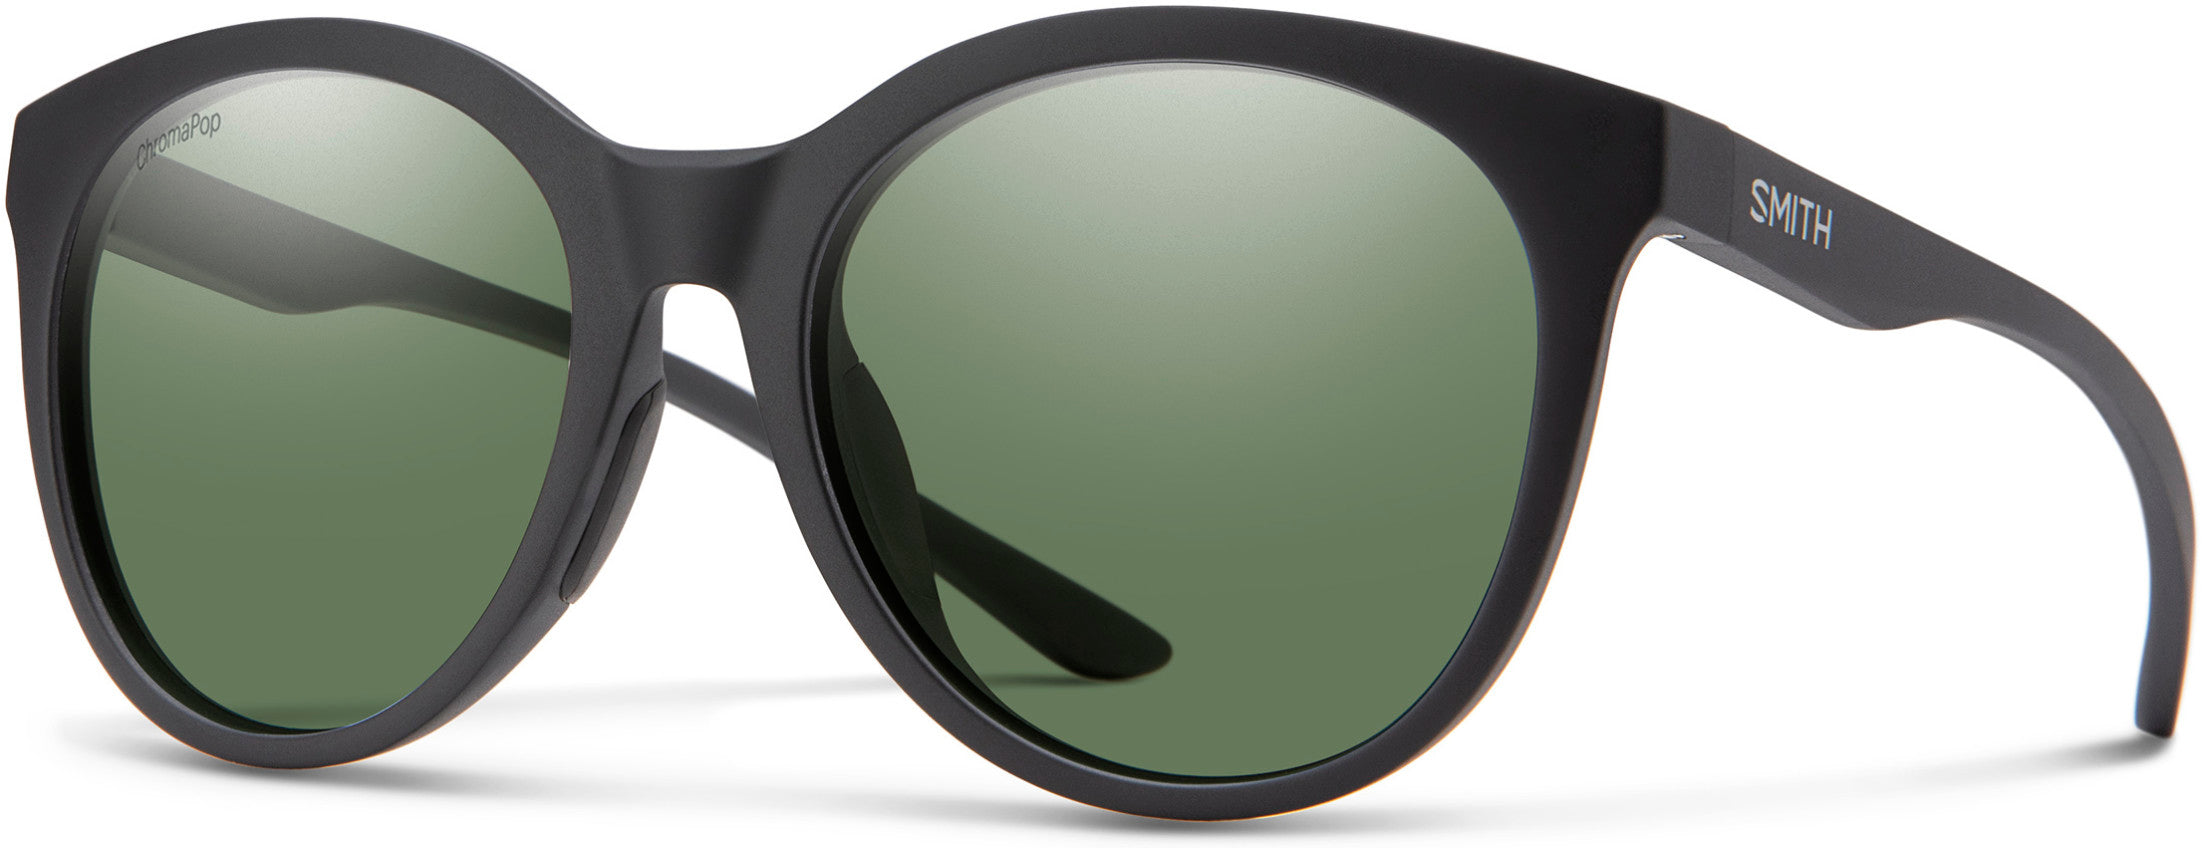 Smith Bayside Oval Modified Sunglasses 0003-0003  Matte Black (L7 Polarized Green CP)